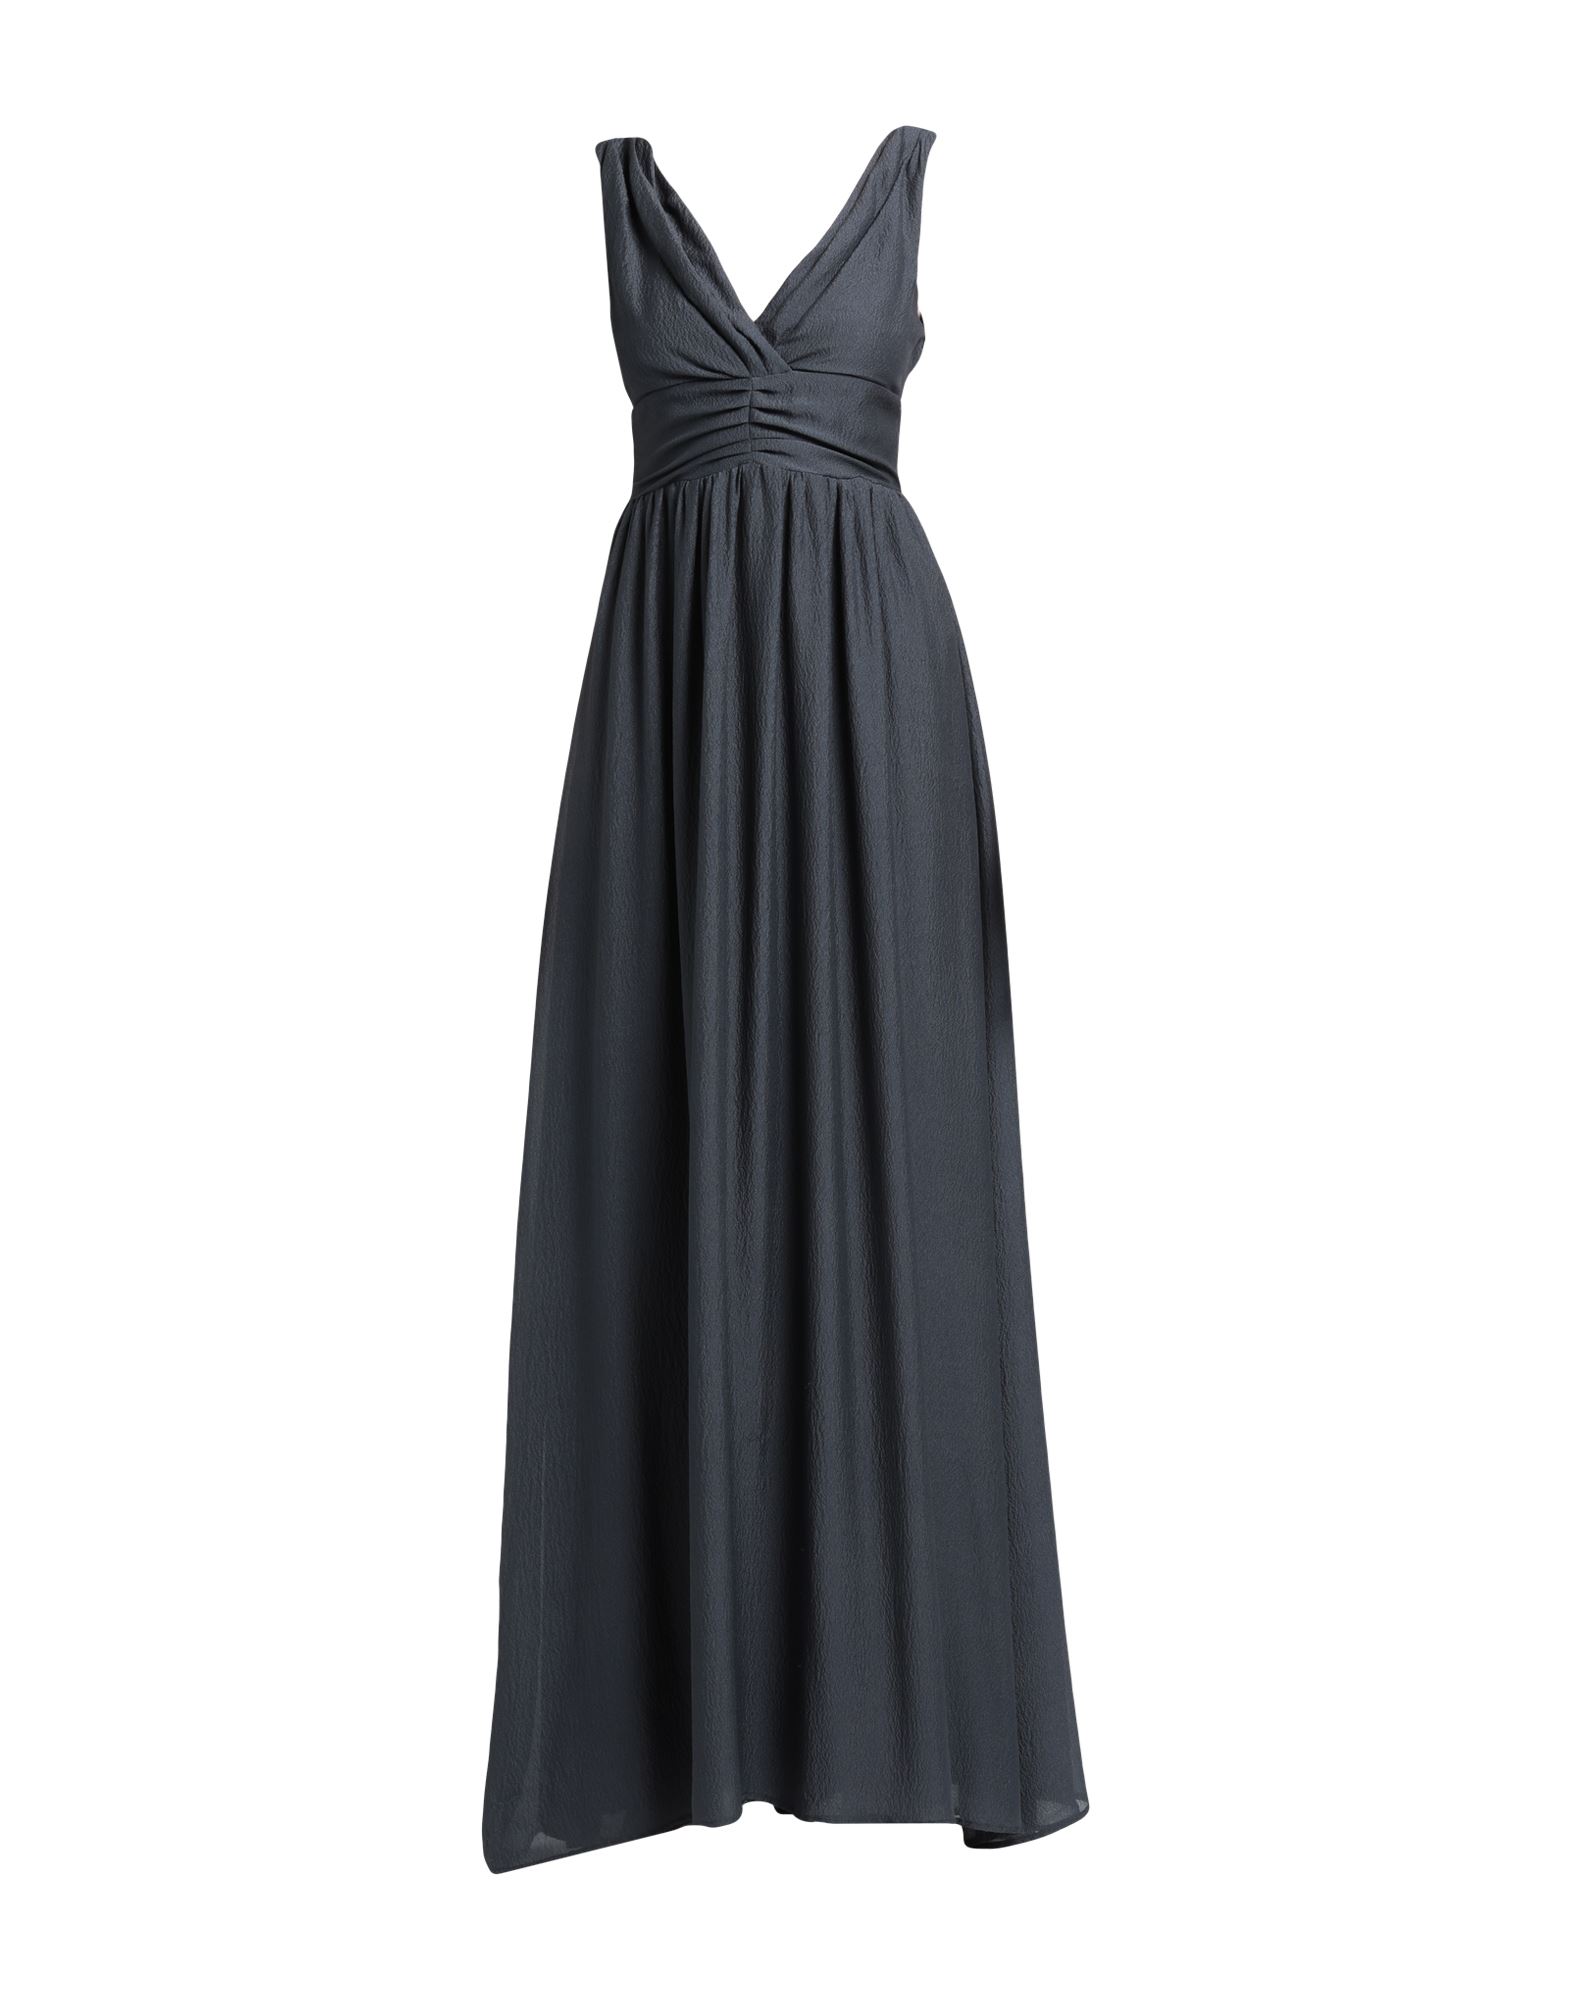 Momoní Woman Maxi Dress Lead Size 4 Silk In Grey